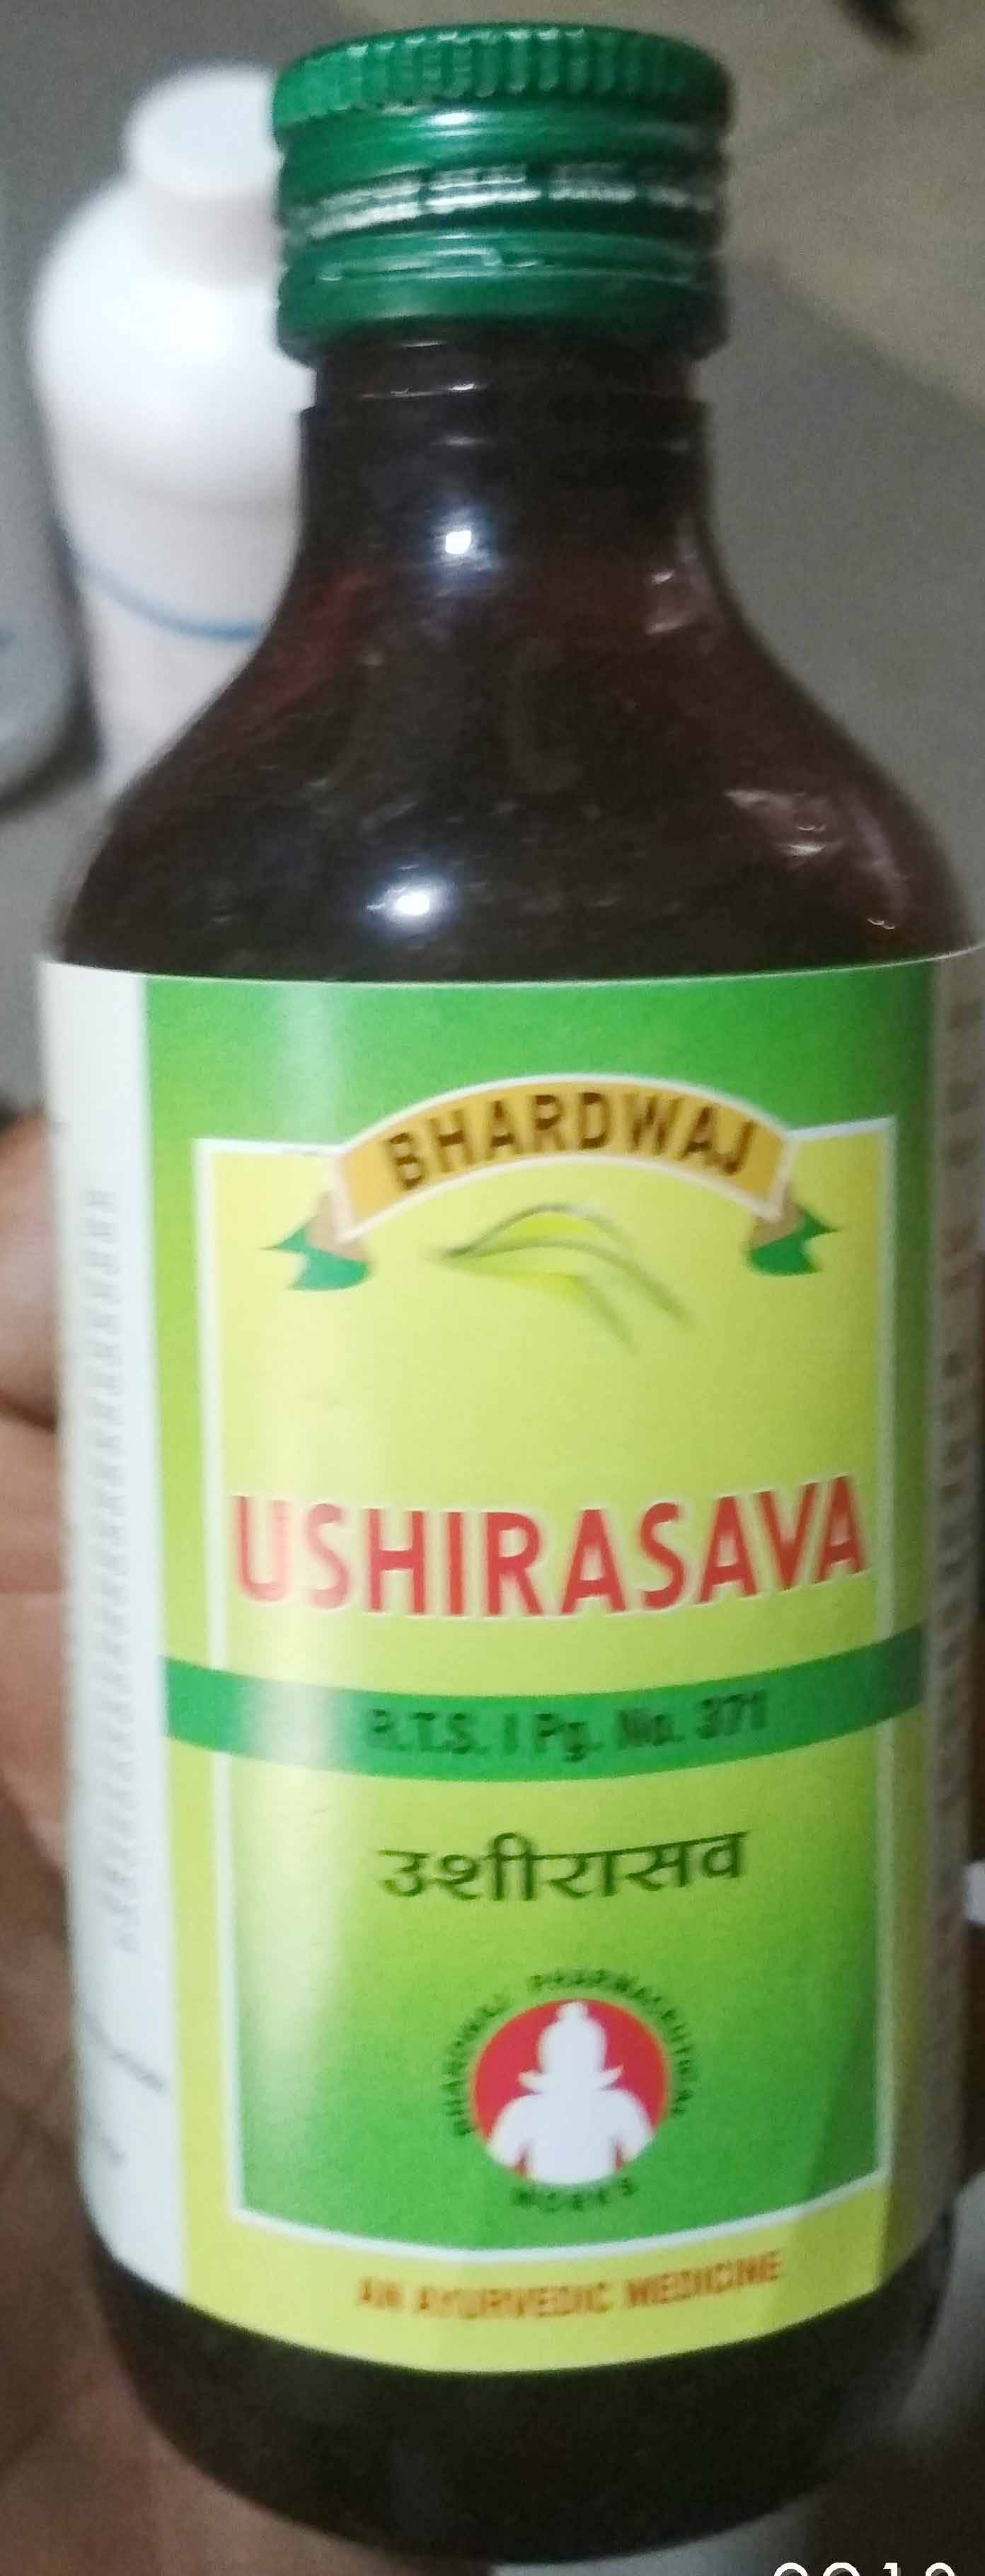 ushirasava 1lit bhardwaj pharmaceuticals indore